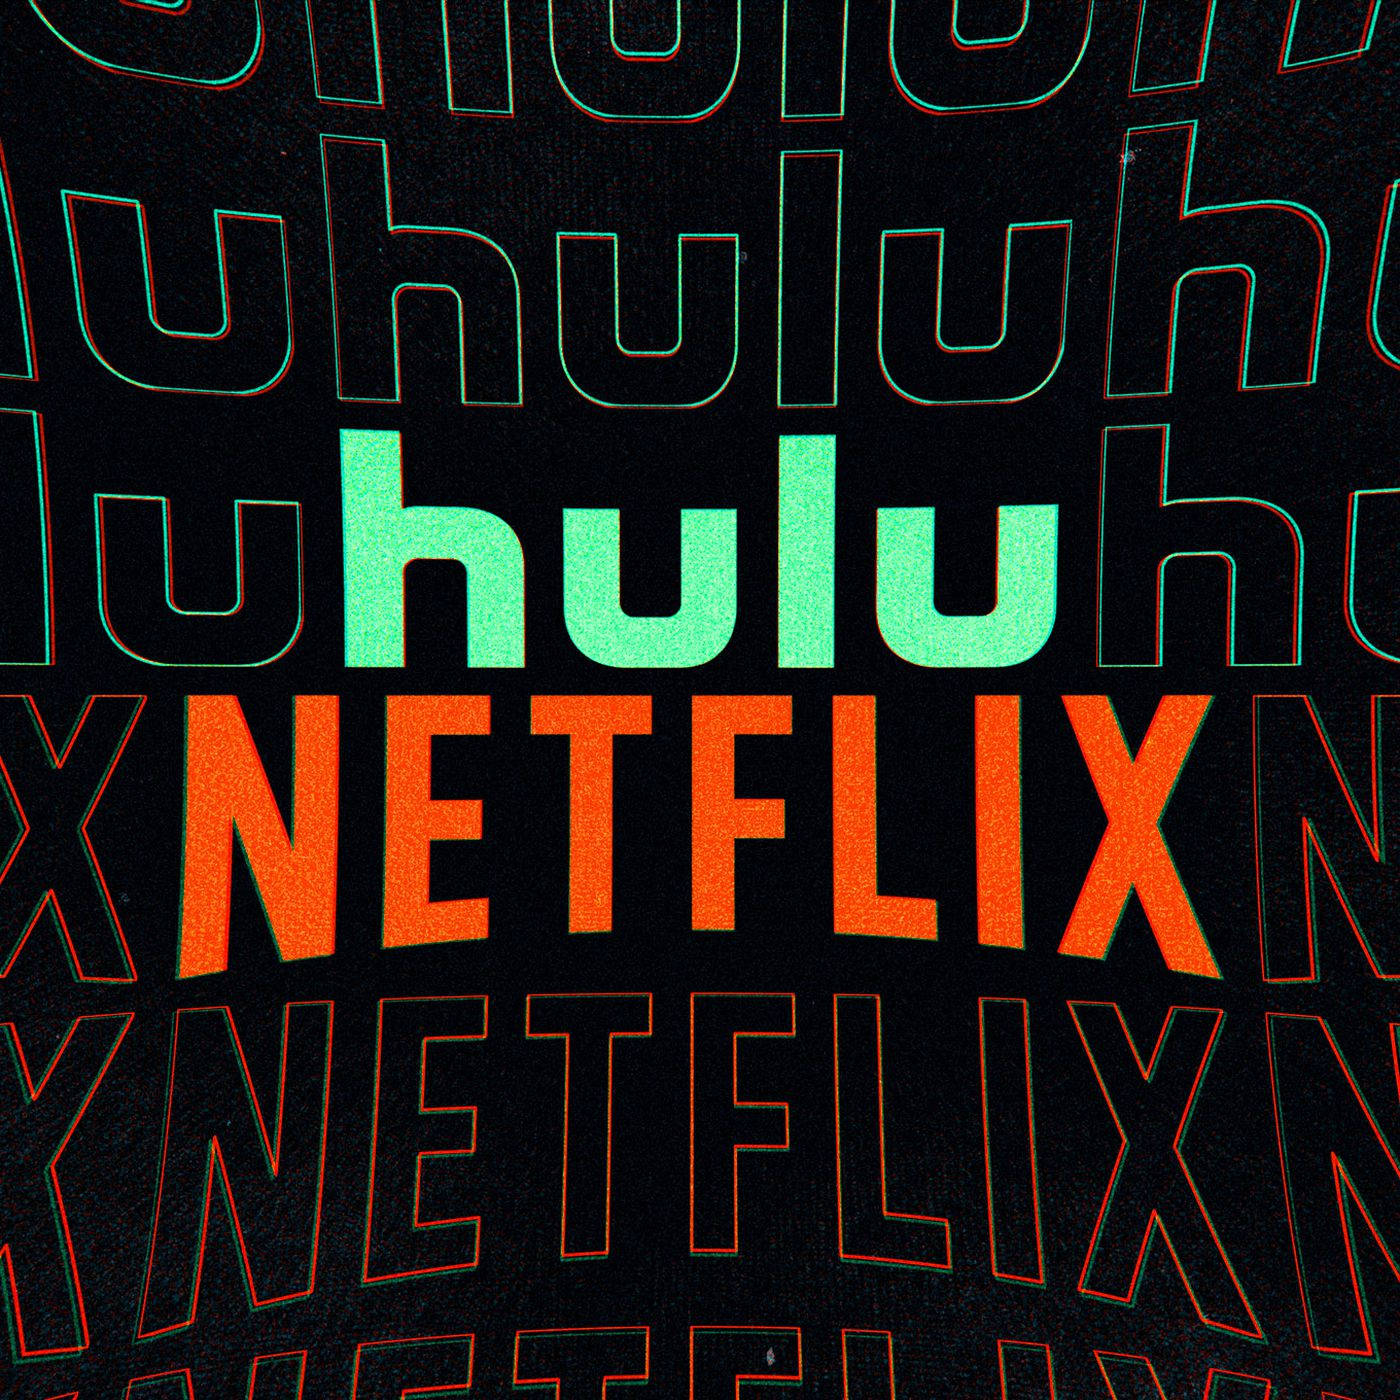 Hulu X Netflix Background